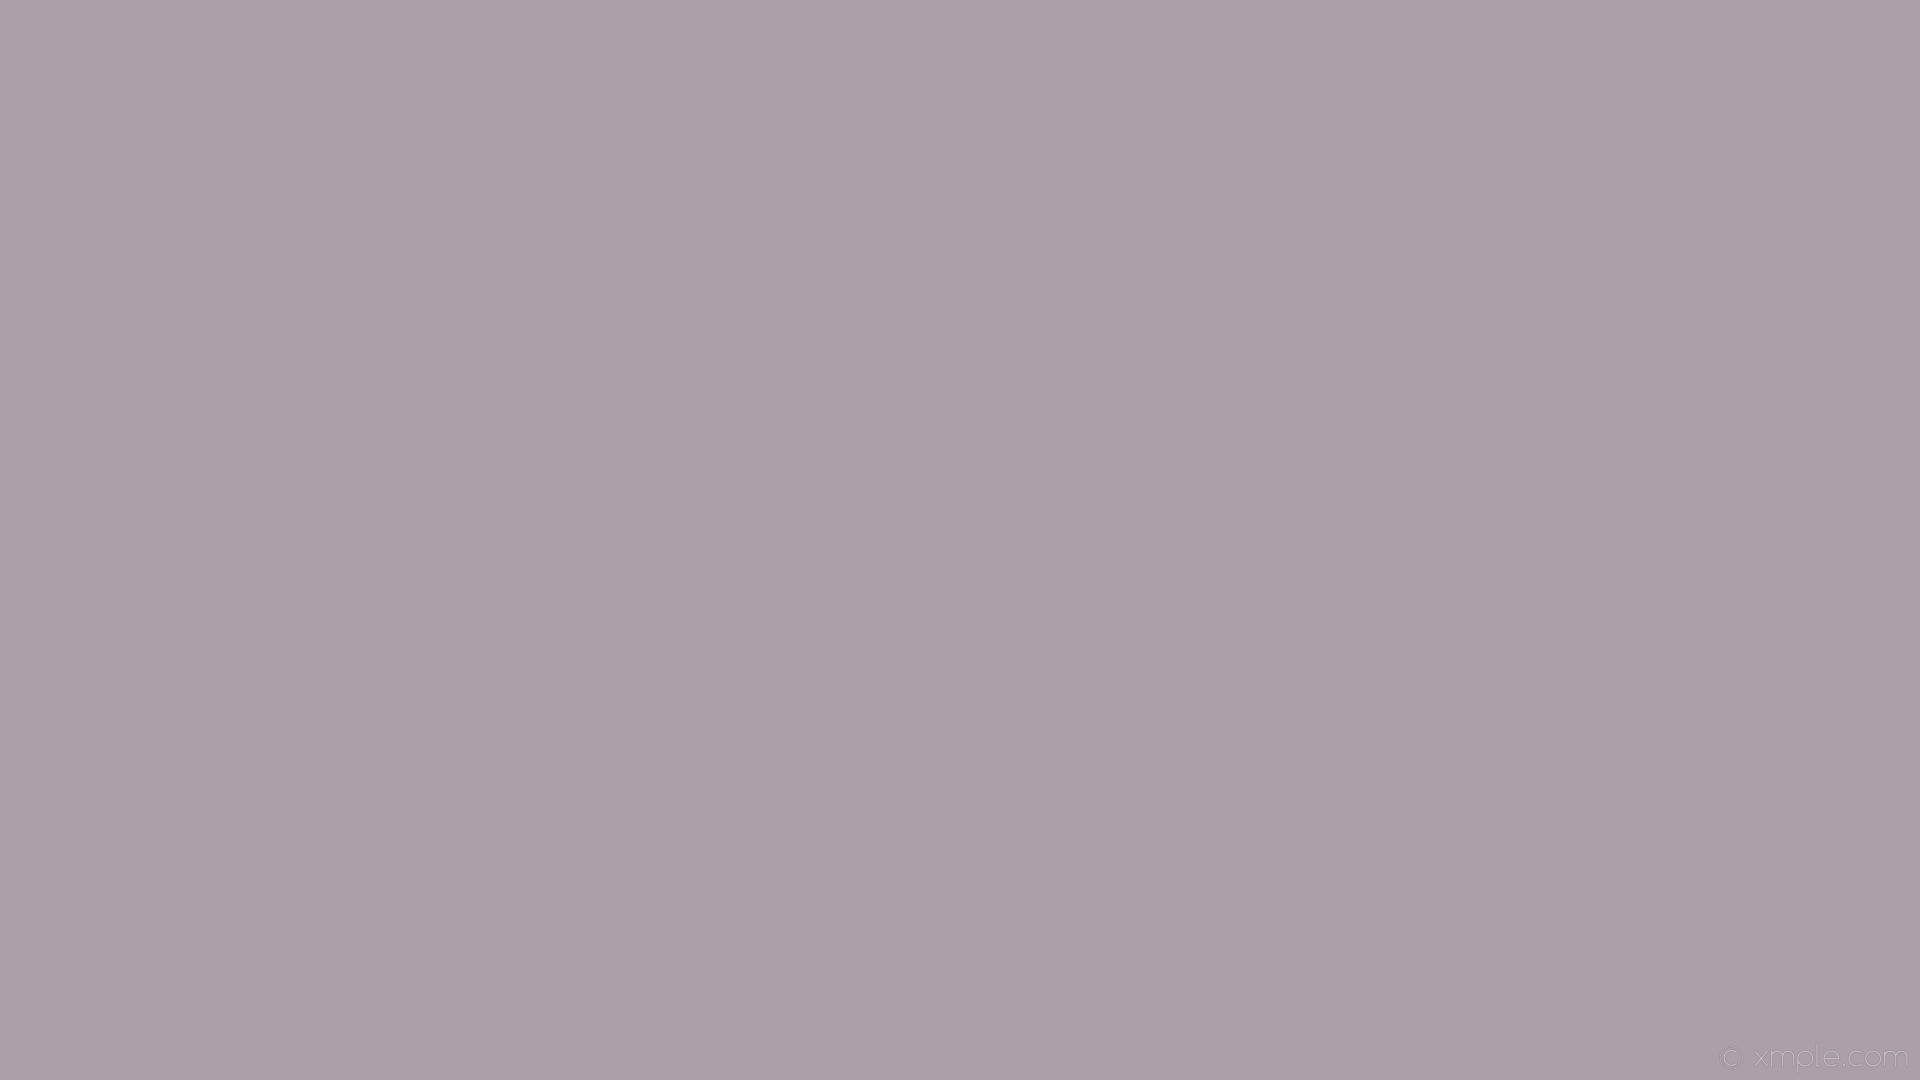 1920x1080 wallpaper gray plain single one colour solid color #ad9faa